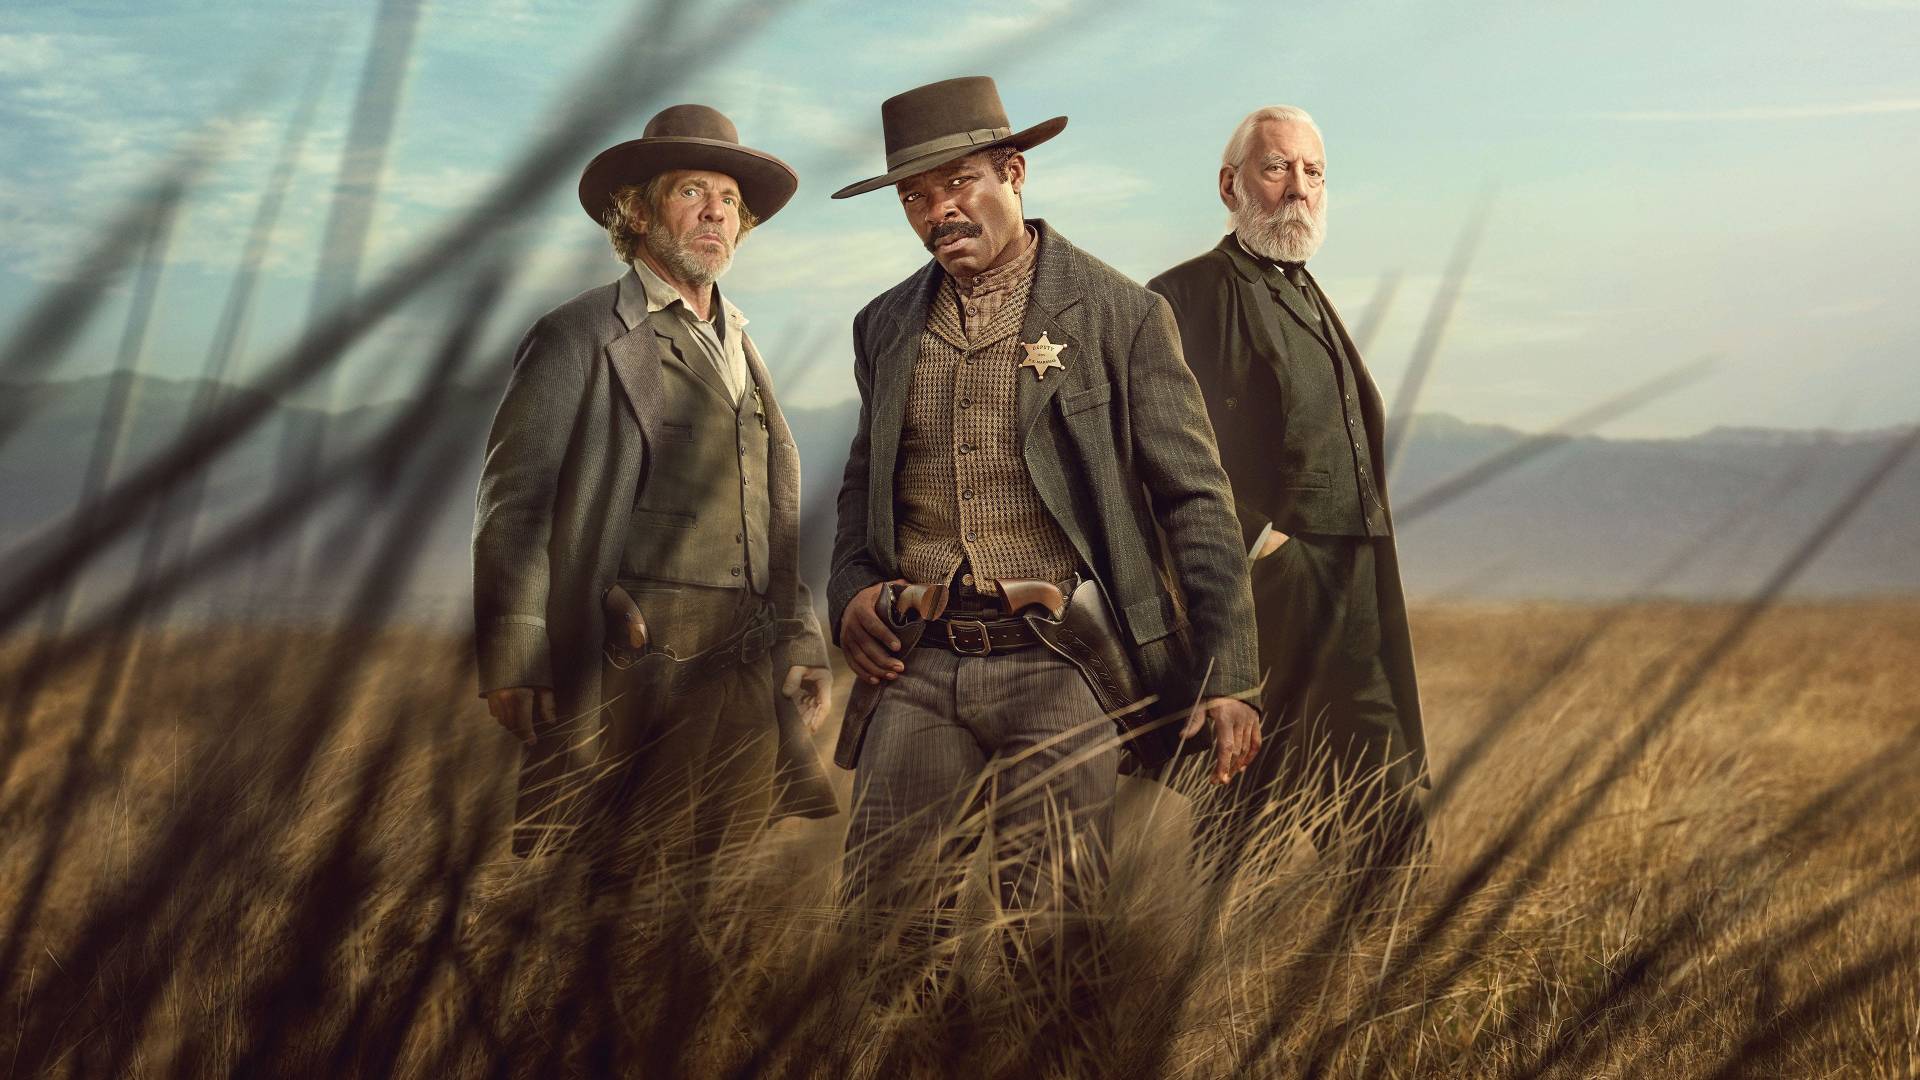 Lawmen: Bass Reeves Series Review - Binge Worthy Western Drama